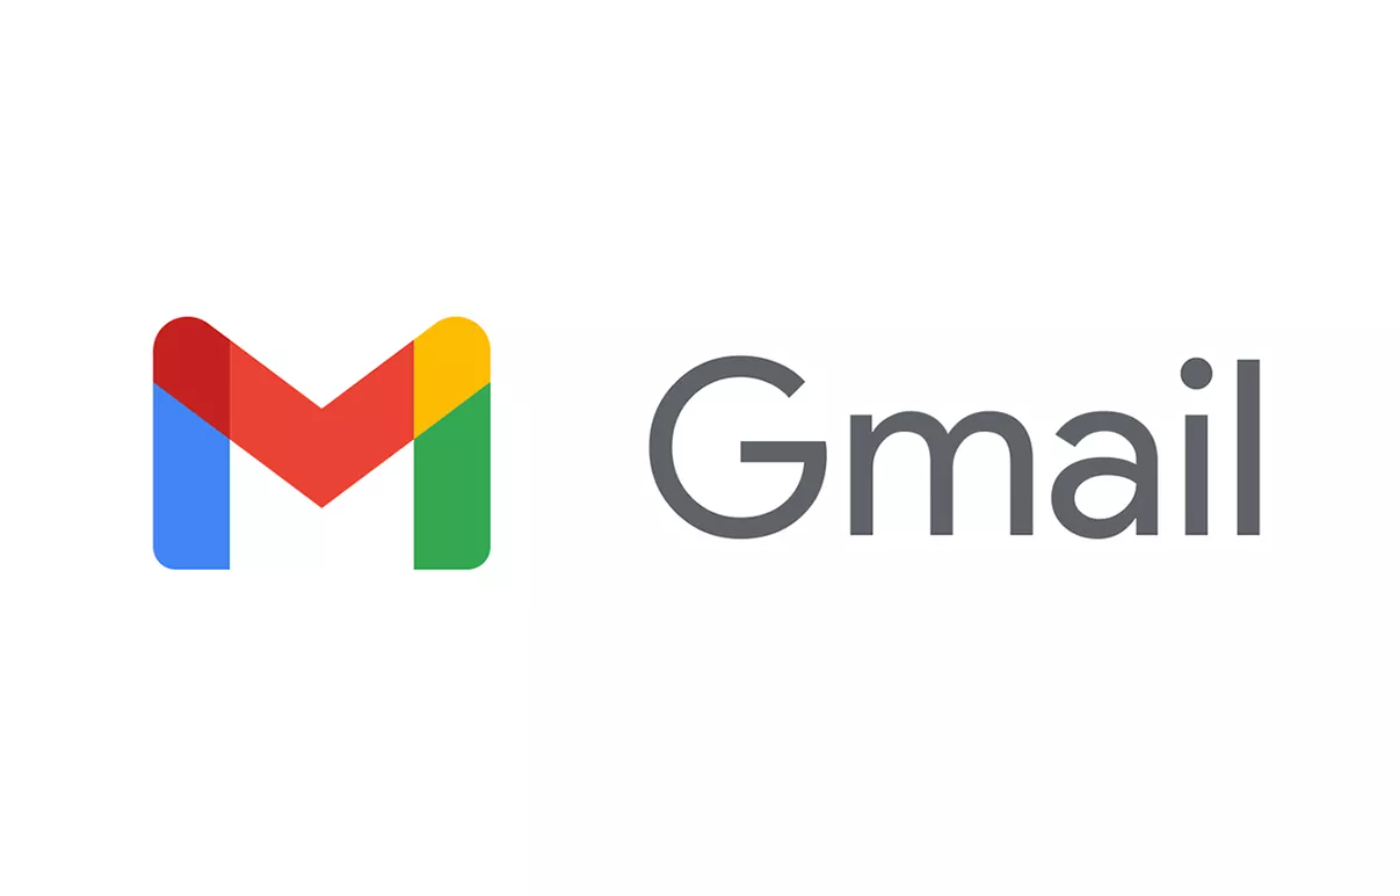 Entfesselnsie Das Potenzial Ihres Gmail-kontos